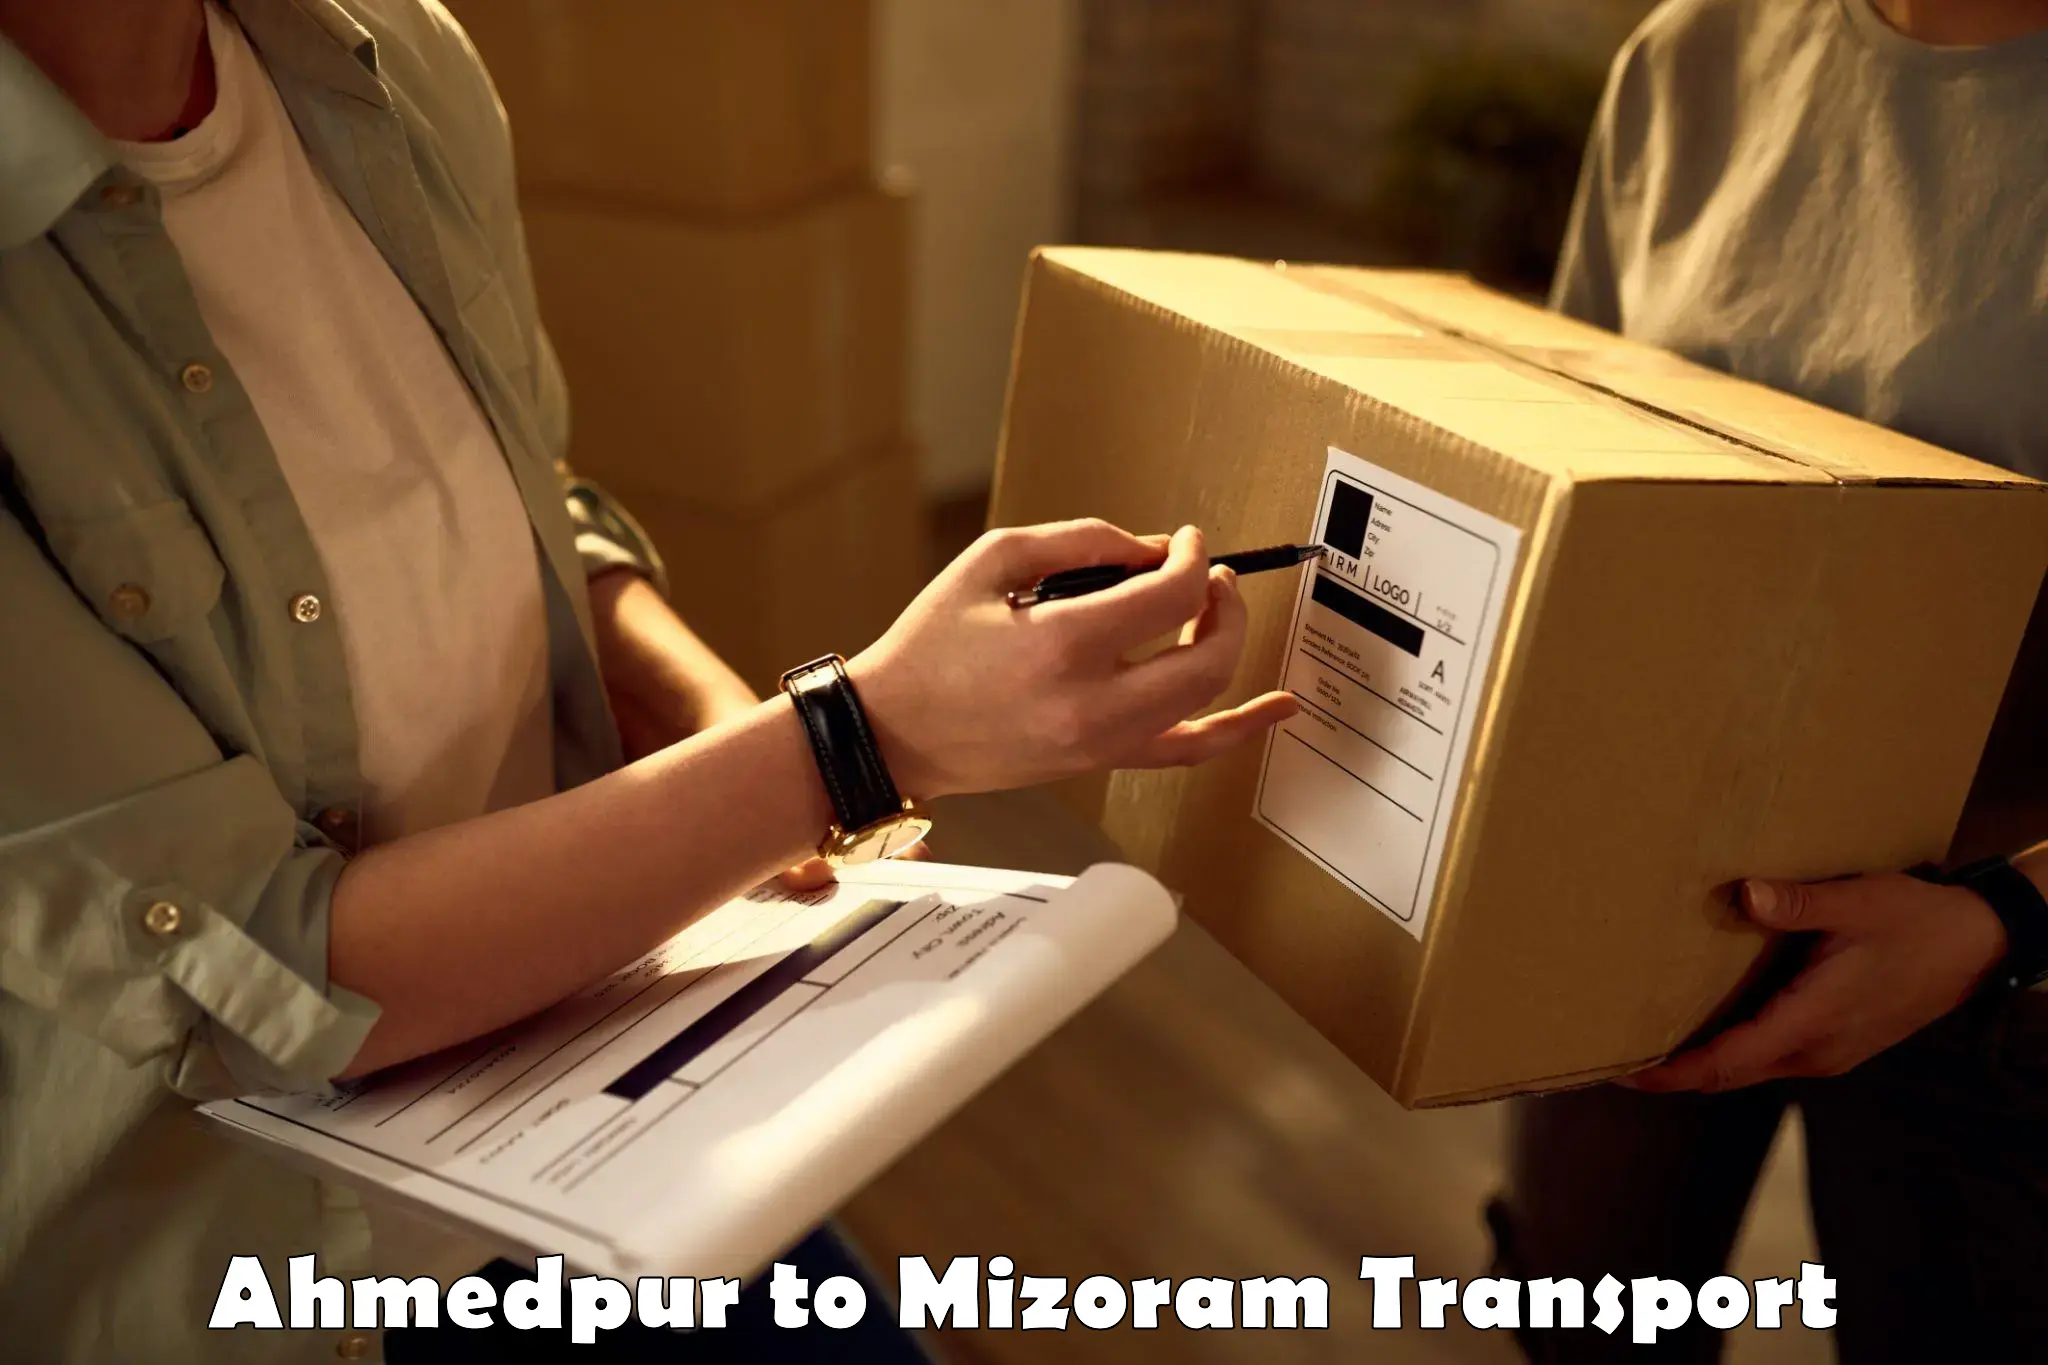 Container transport service Ahmedpur to Mizoram